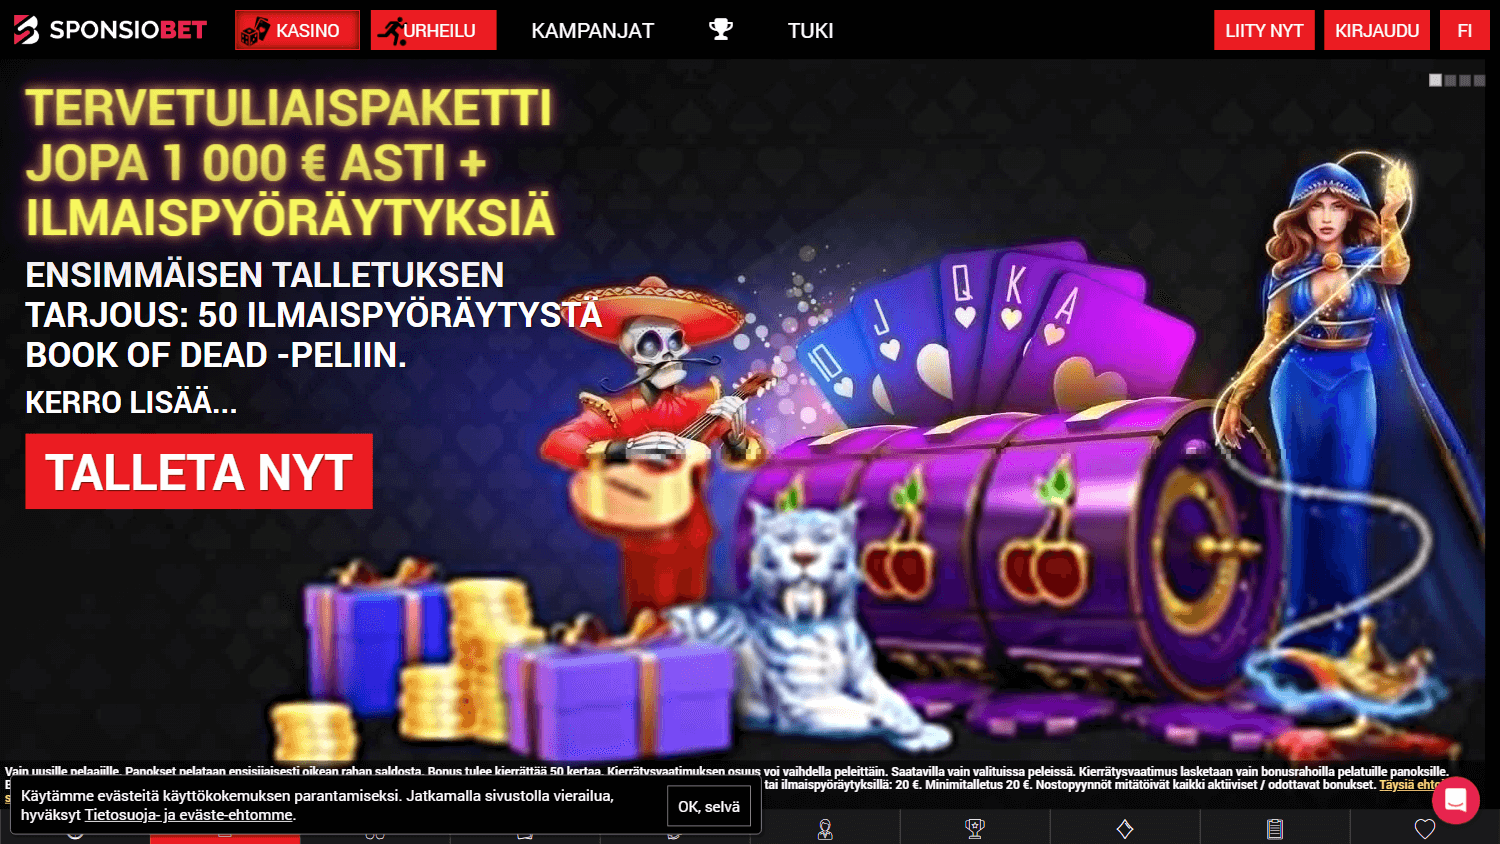 sponsiobet_casino_homepage_desktop